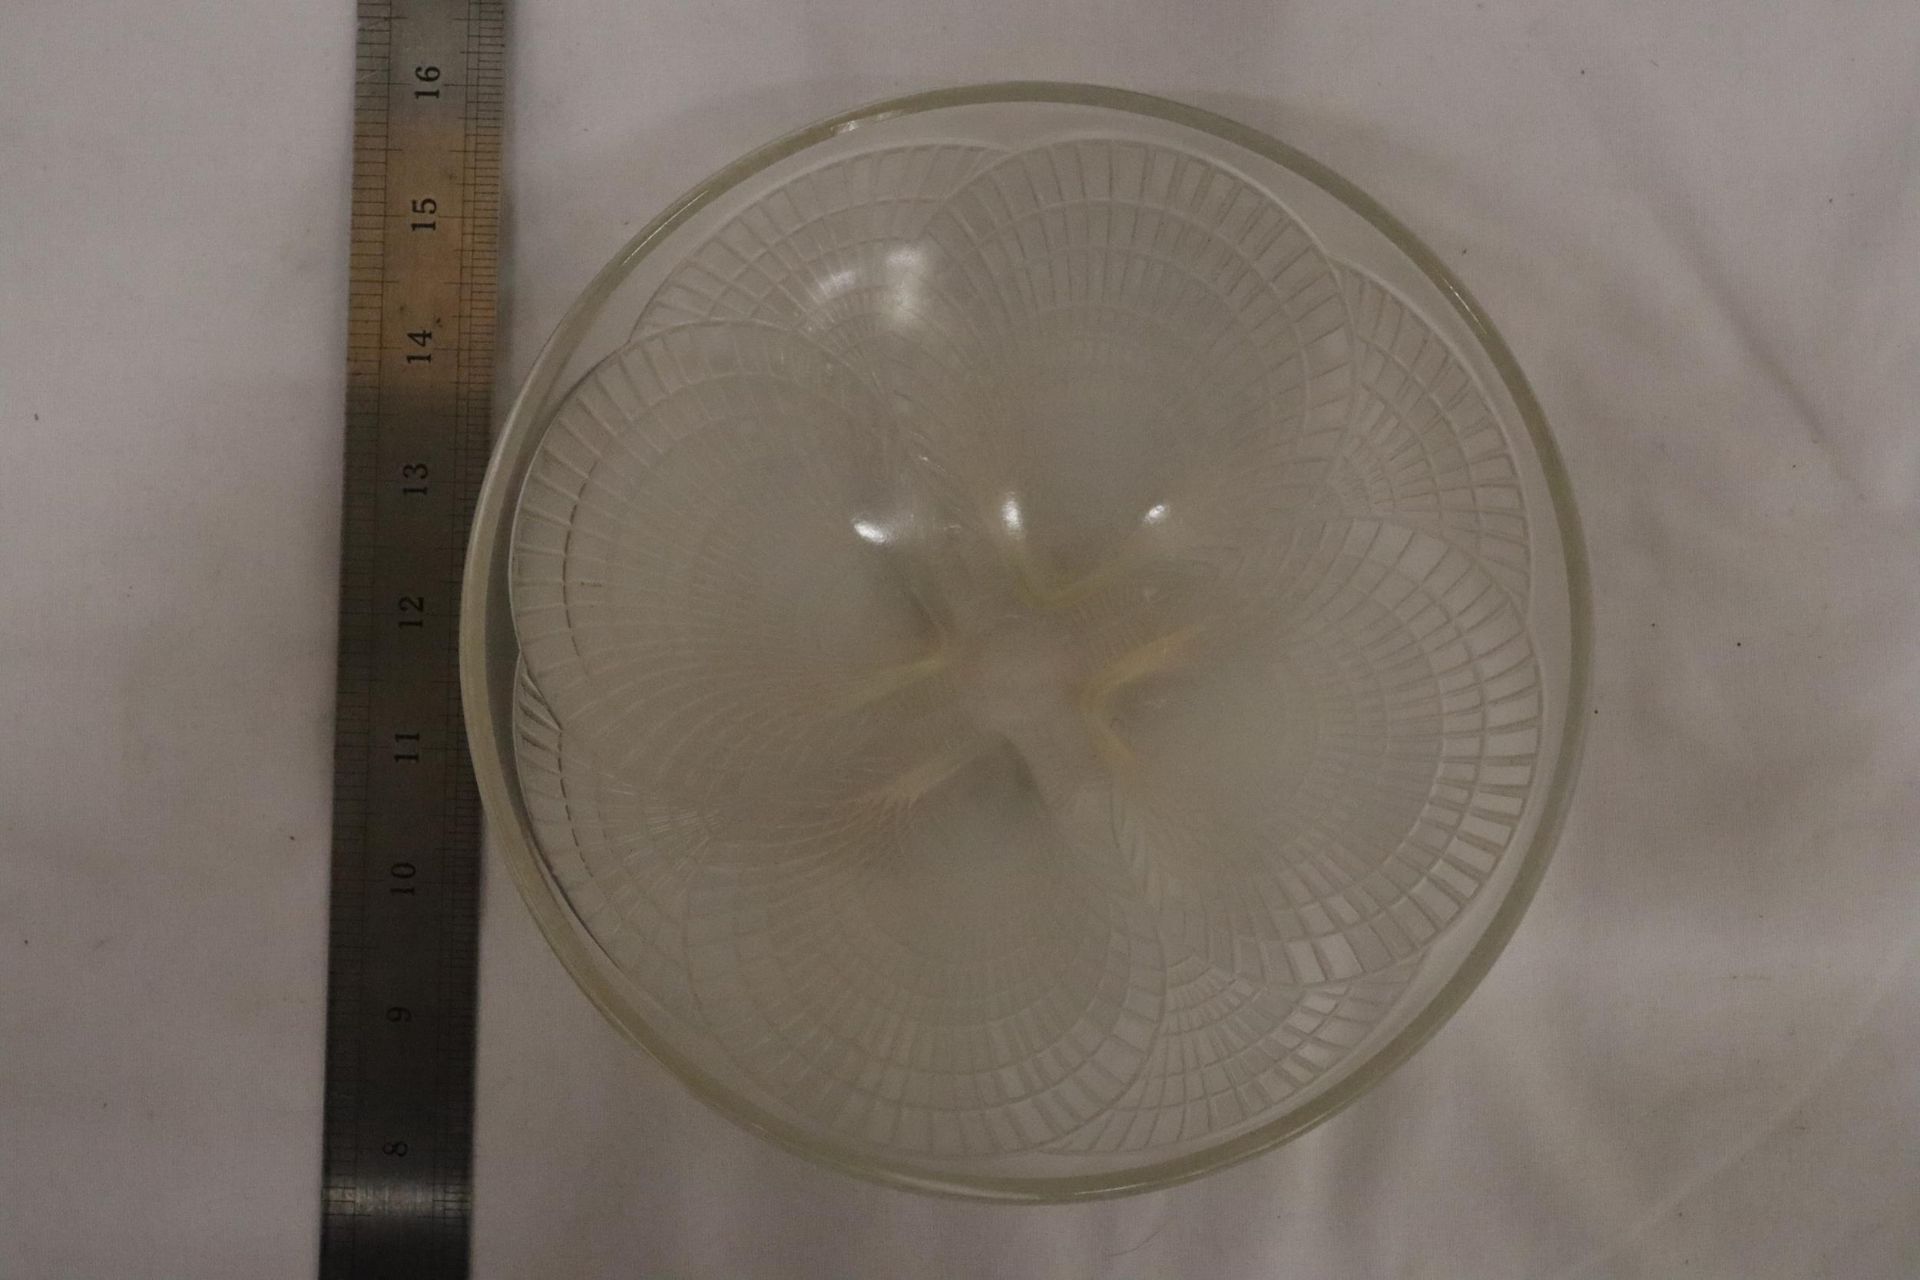 A R LALIQUE FRANCE NO 3202 COCQUILLES PATTERN GLASS BOWL SIGNED TO BASE 18CM DIAMETER - Bild 6 aus 6